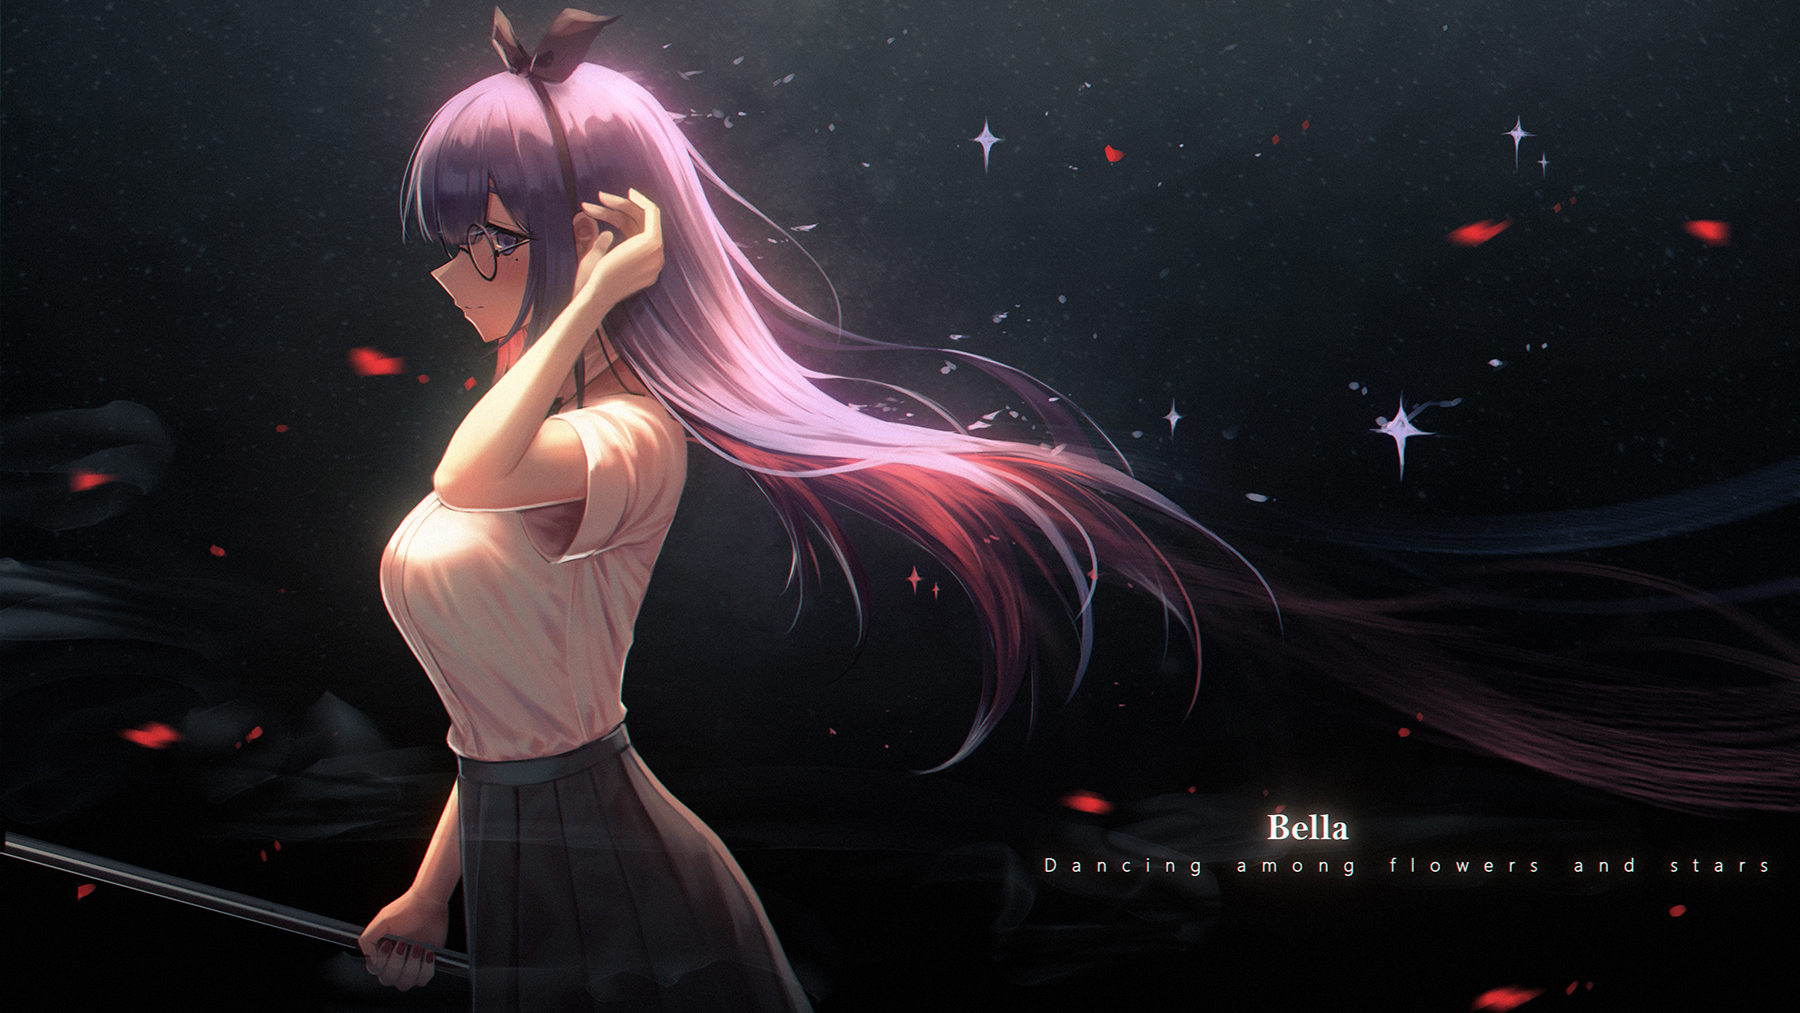 Anime Anime Girls Digital Art Artwork 2D Yurichtofen Purple Hair Long Hair Glasses 1800x1013